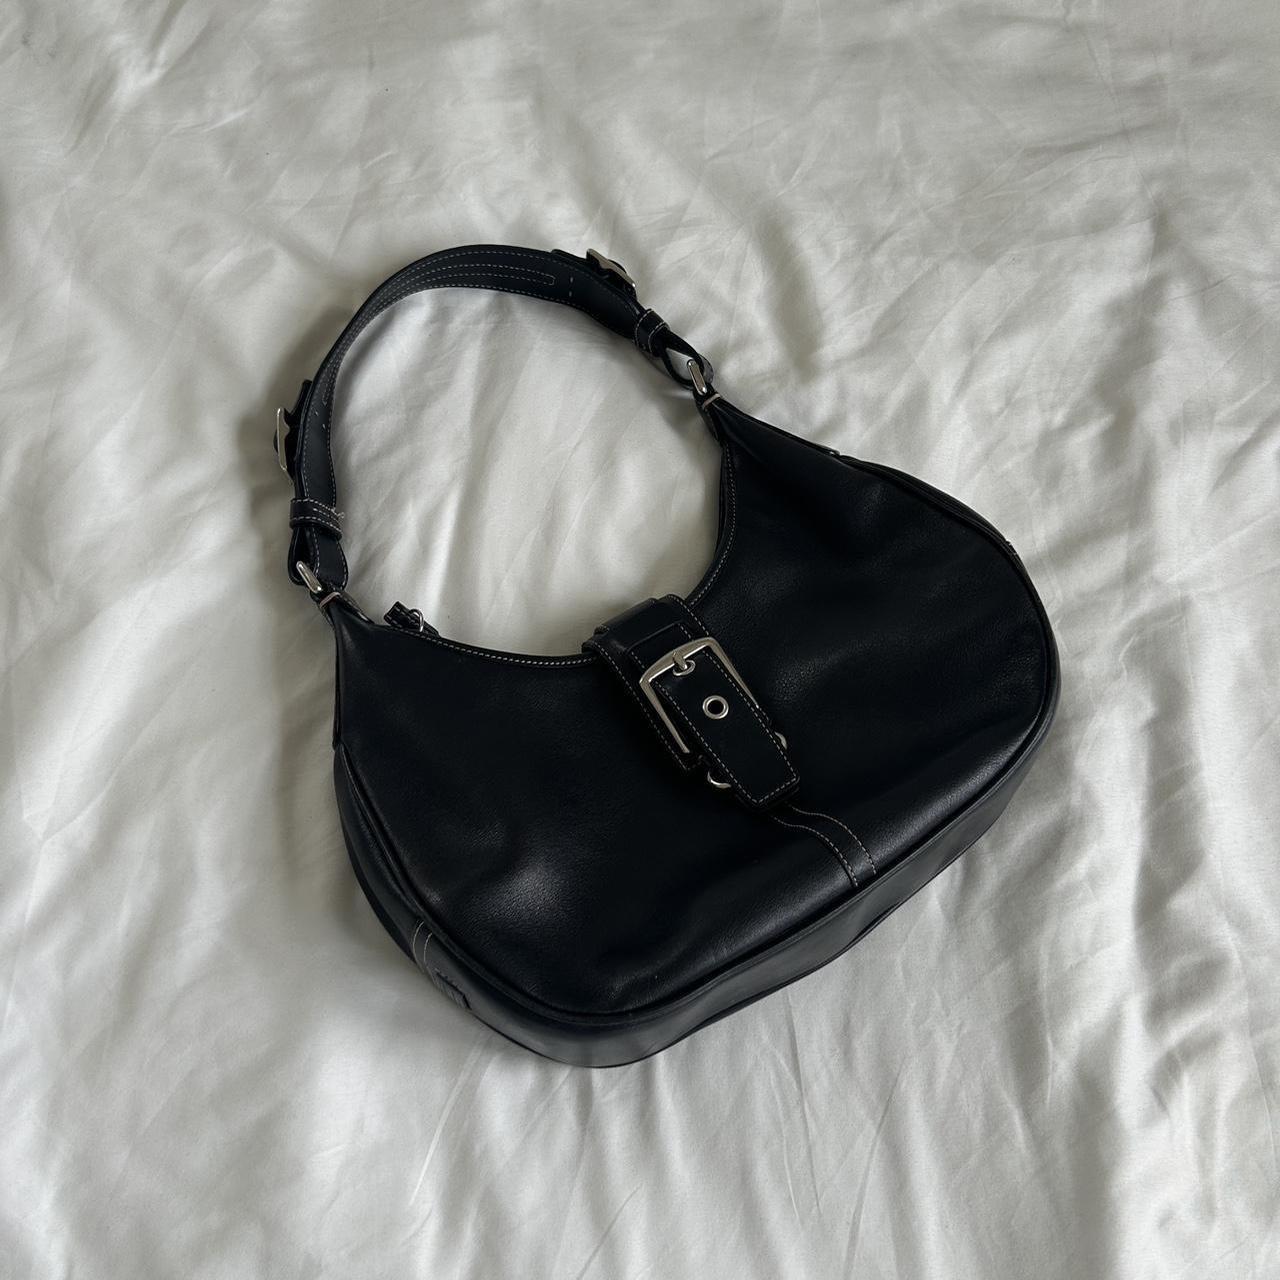 Vintage Coach shoulder bag Bought from thredup and... - Depop